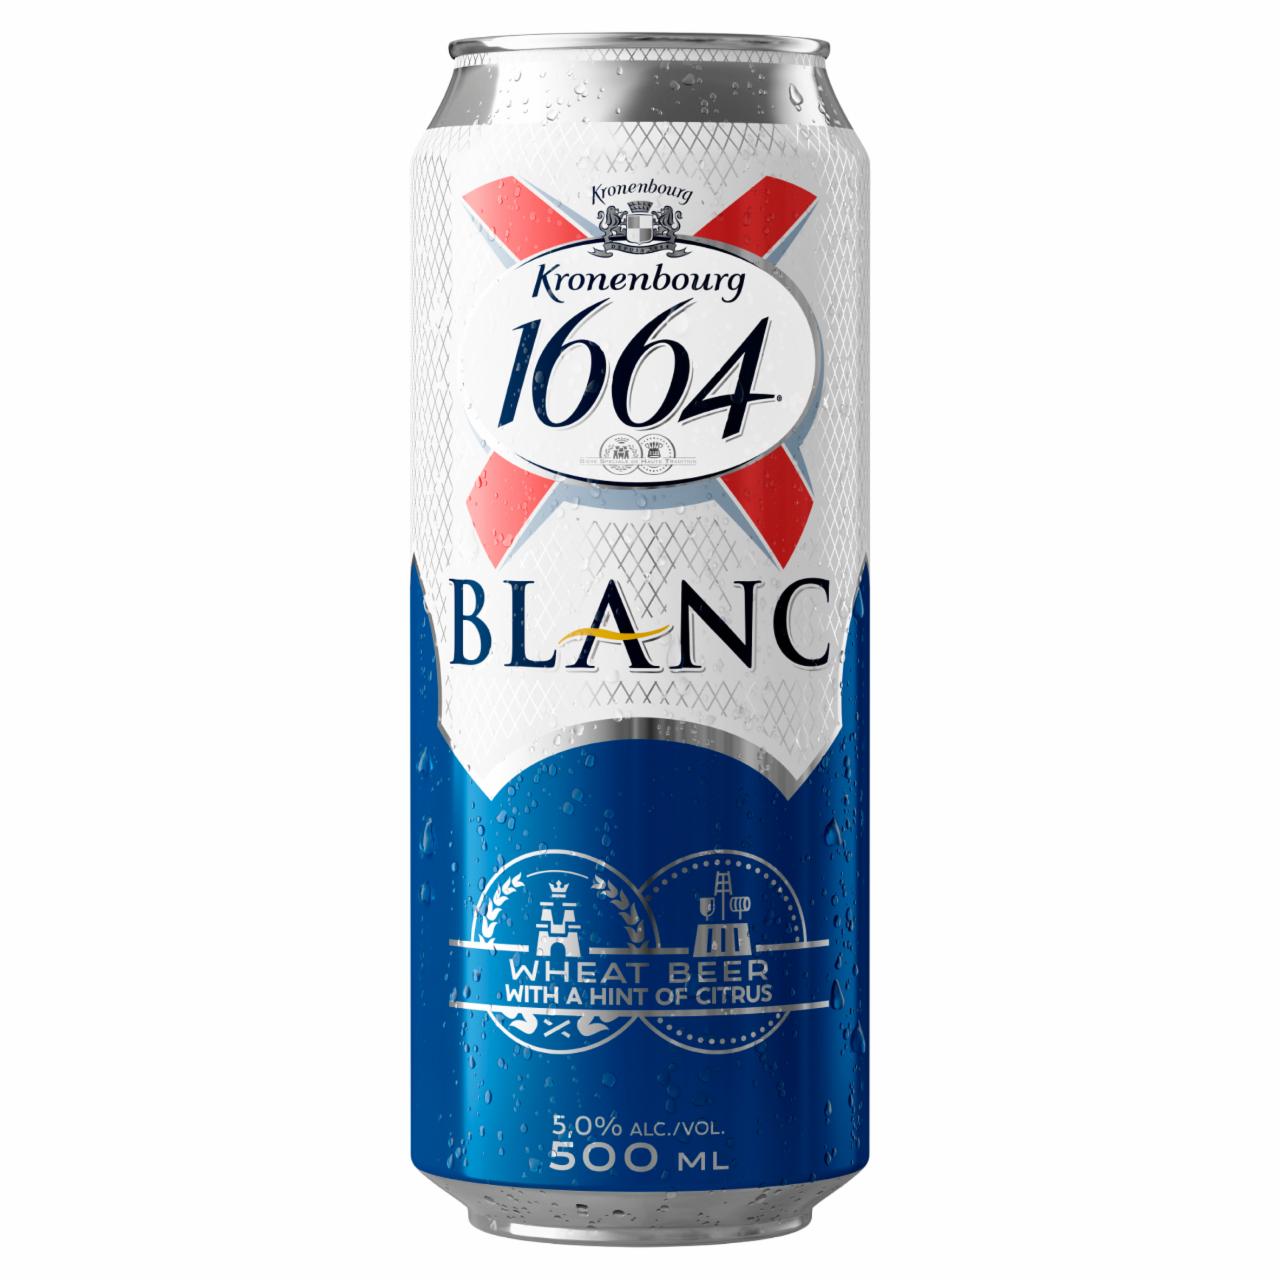 Képek - Kronenbourg 1664 Blanc búzasör 5% 0,5 l